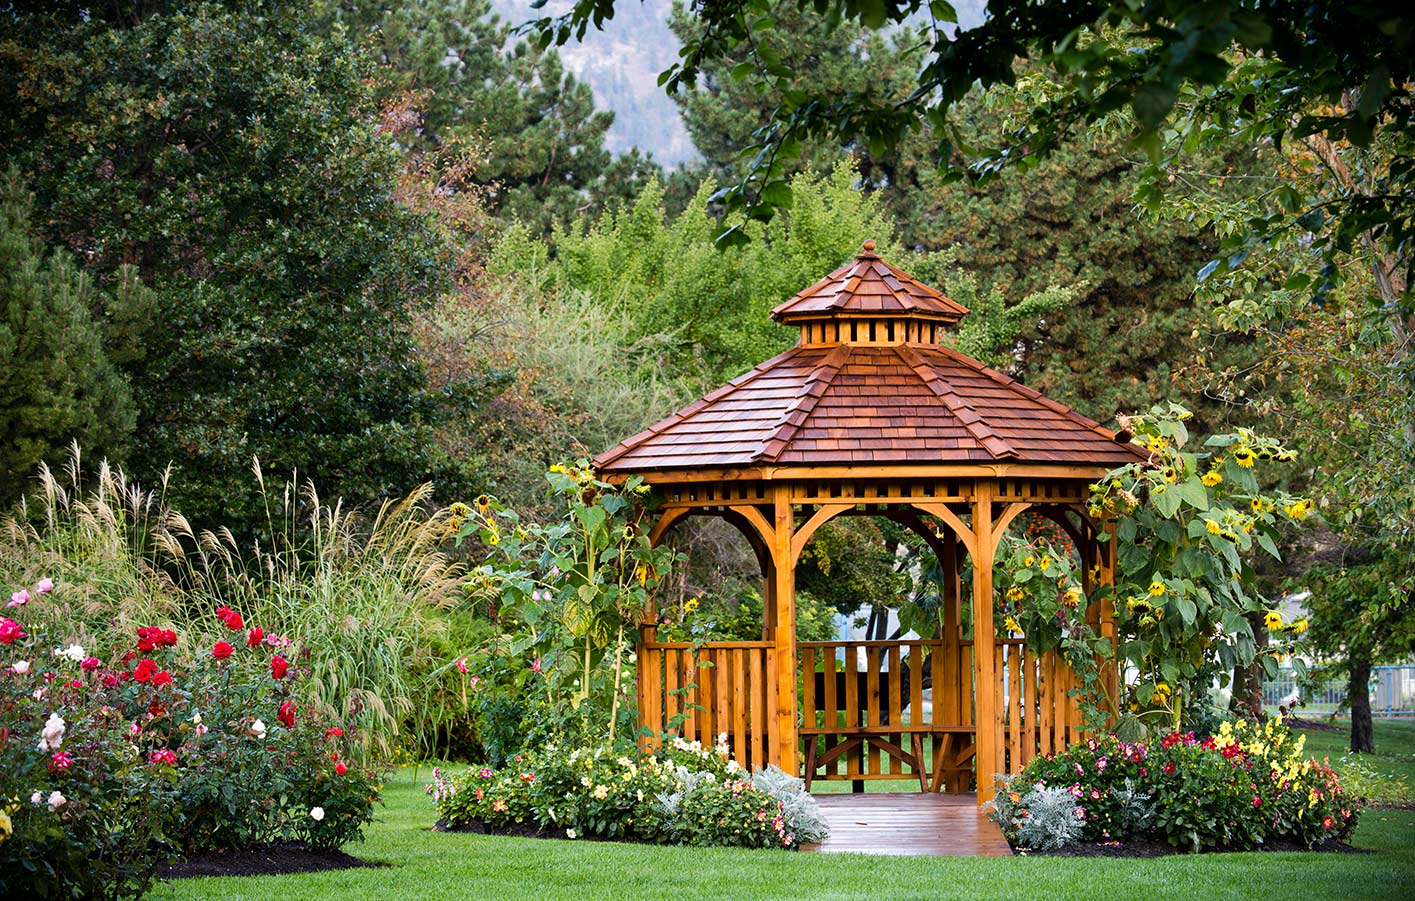 Pavillon aus Holz mit Dachziegeln in einem Garten